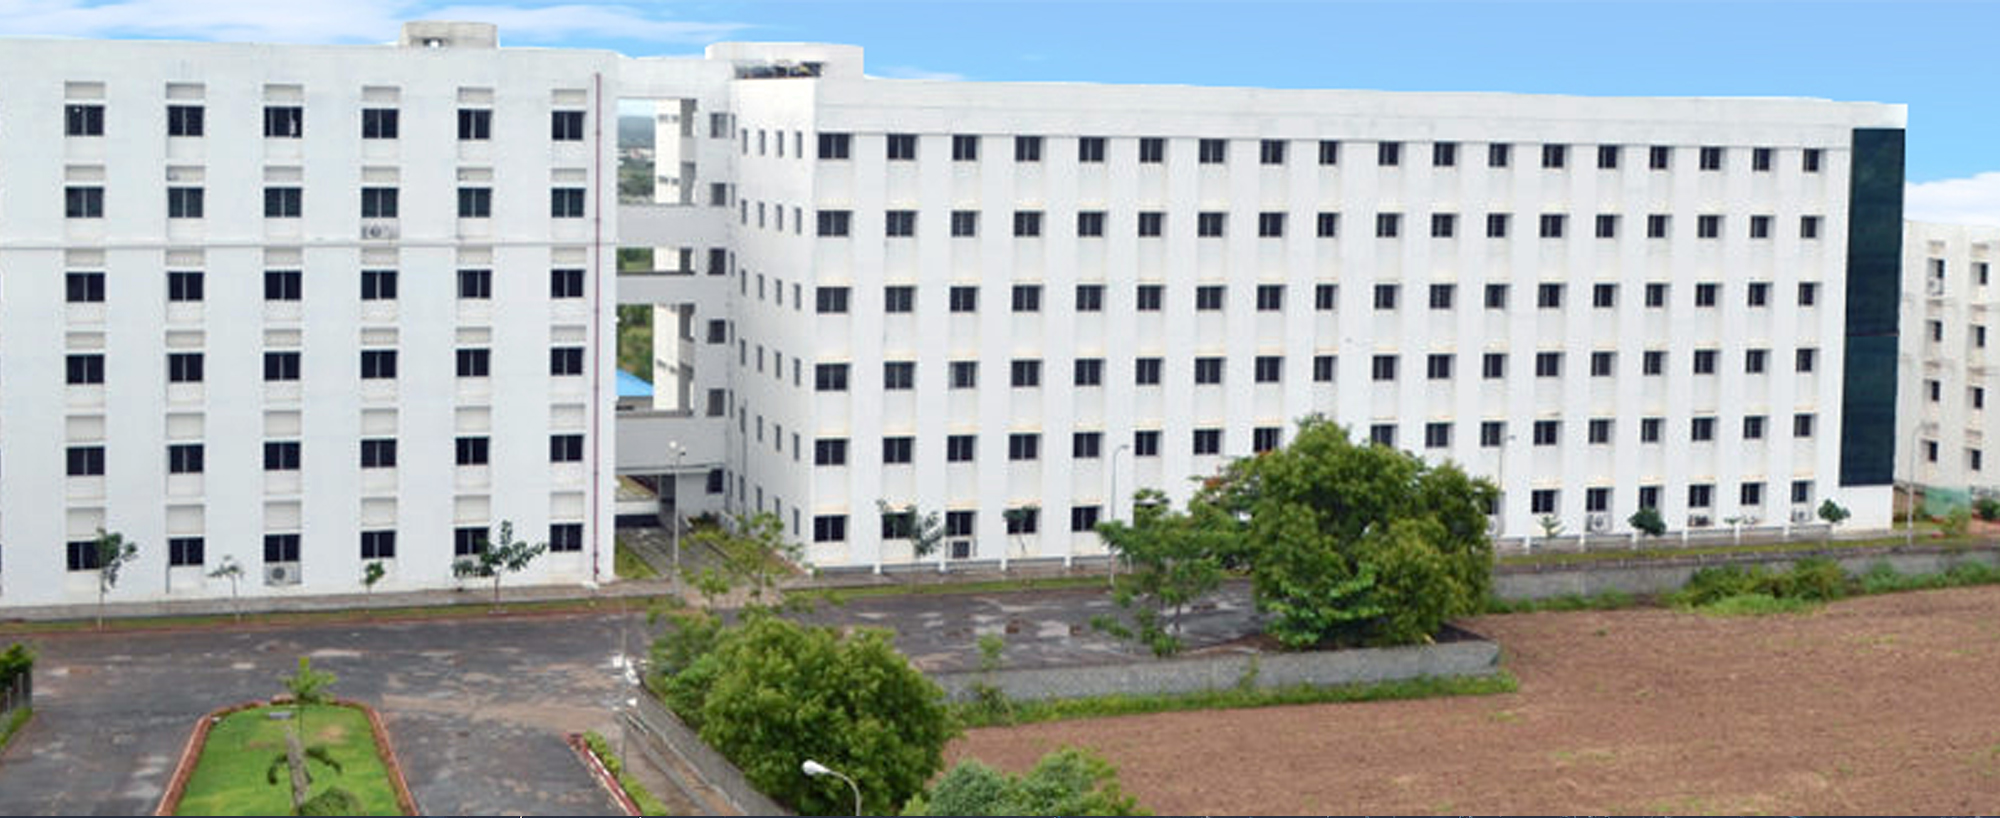 KGiSL Institute of Technology